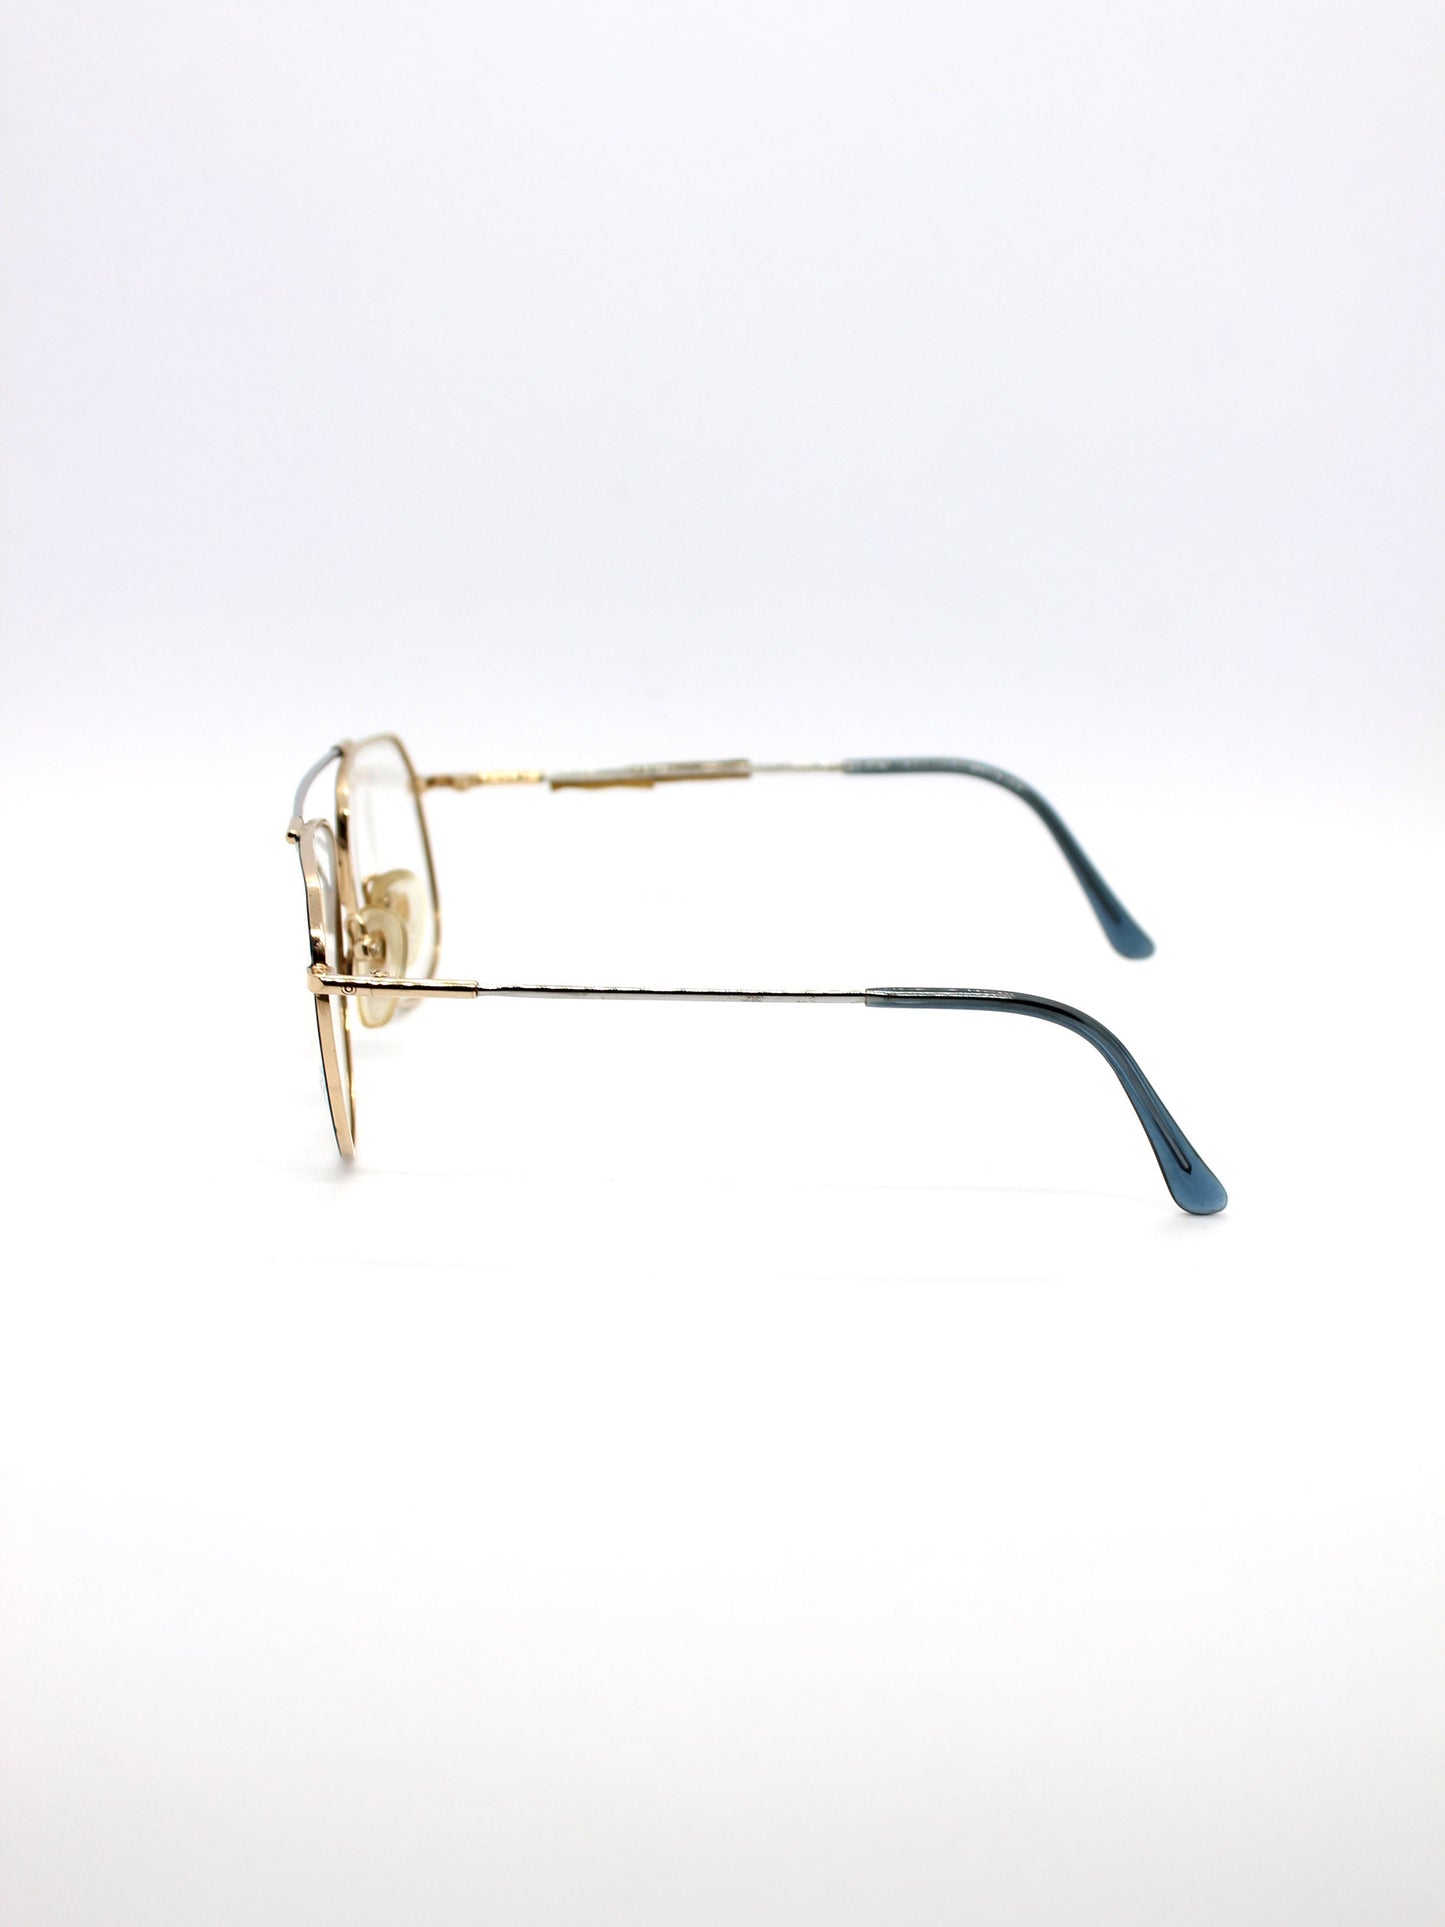 Indo Aviator Eyeglasses - Mod. Memory Jr.